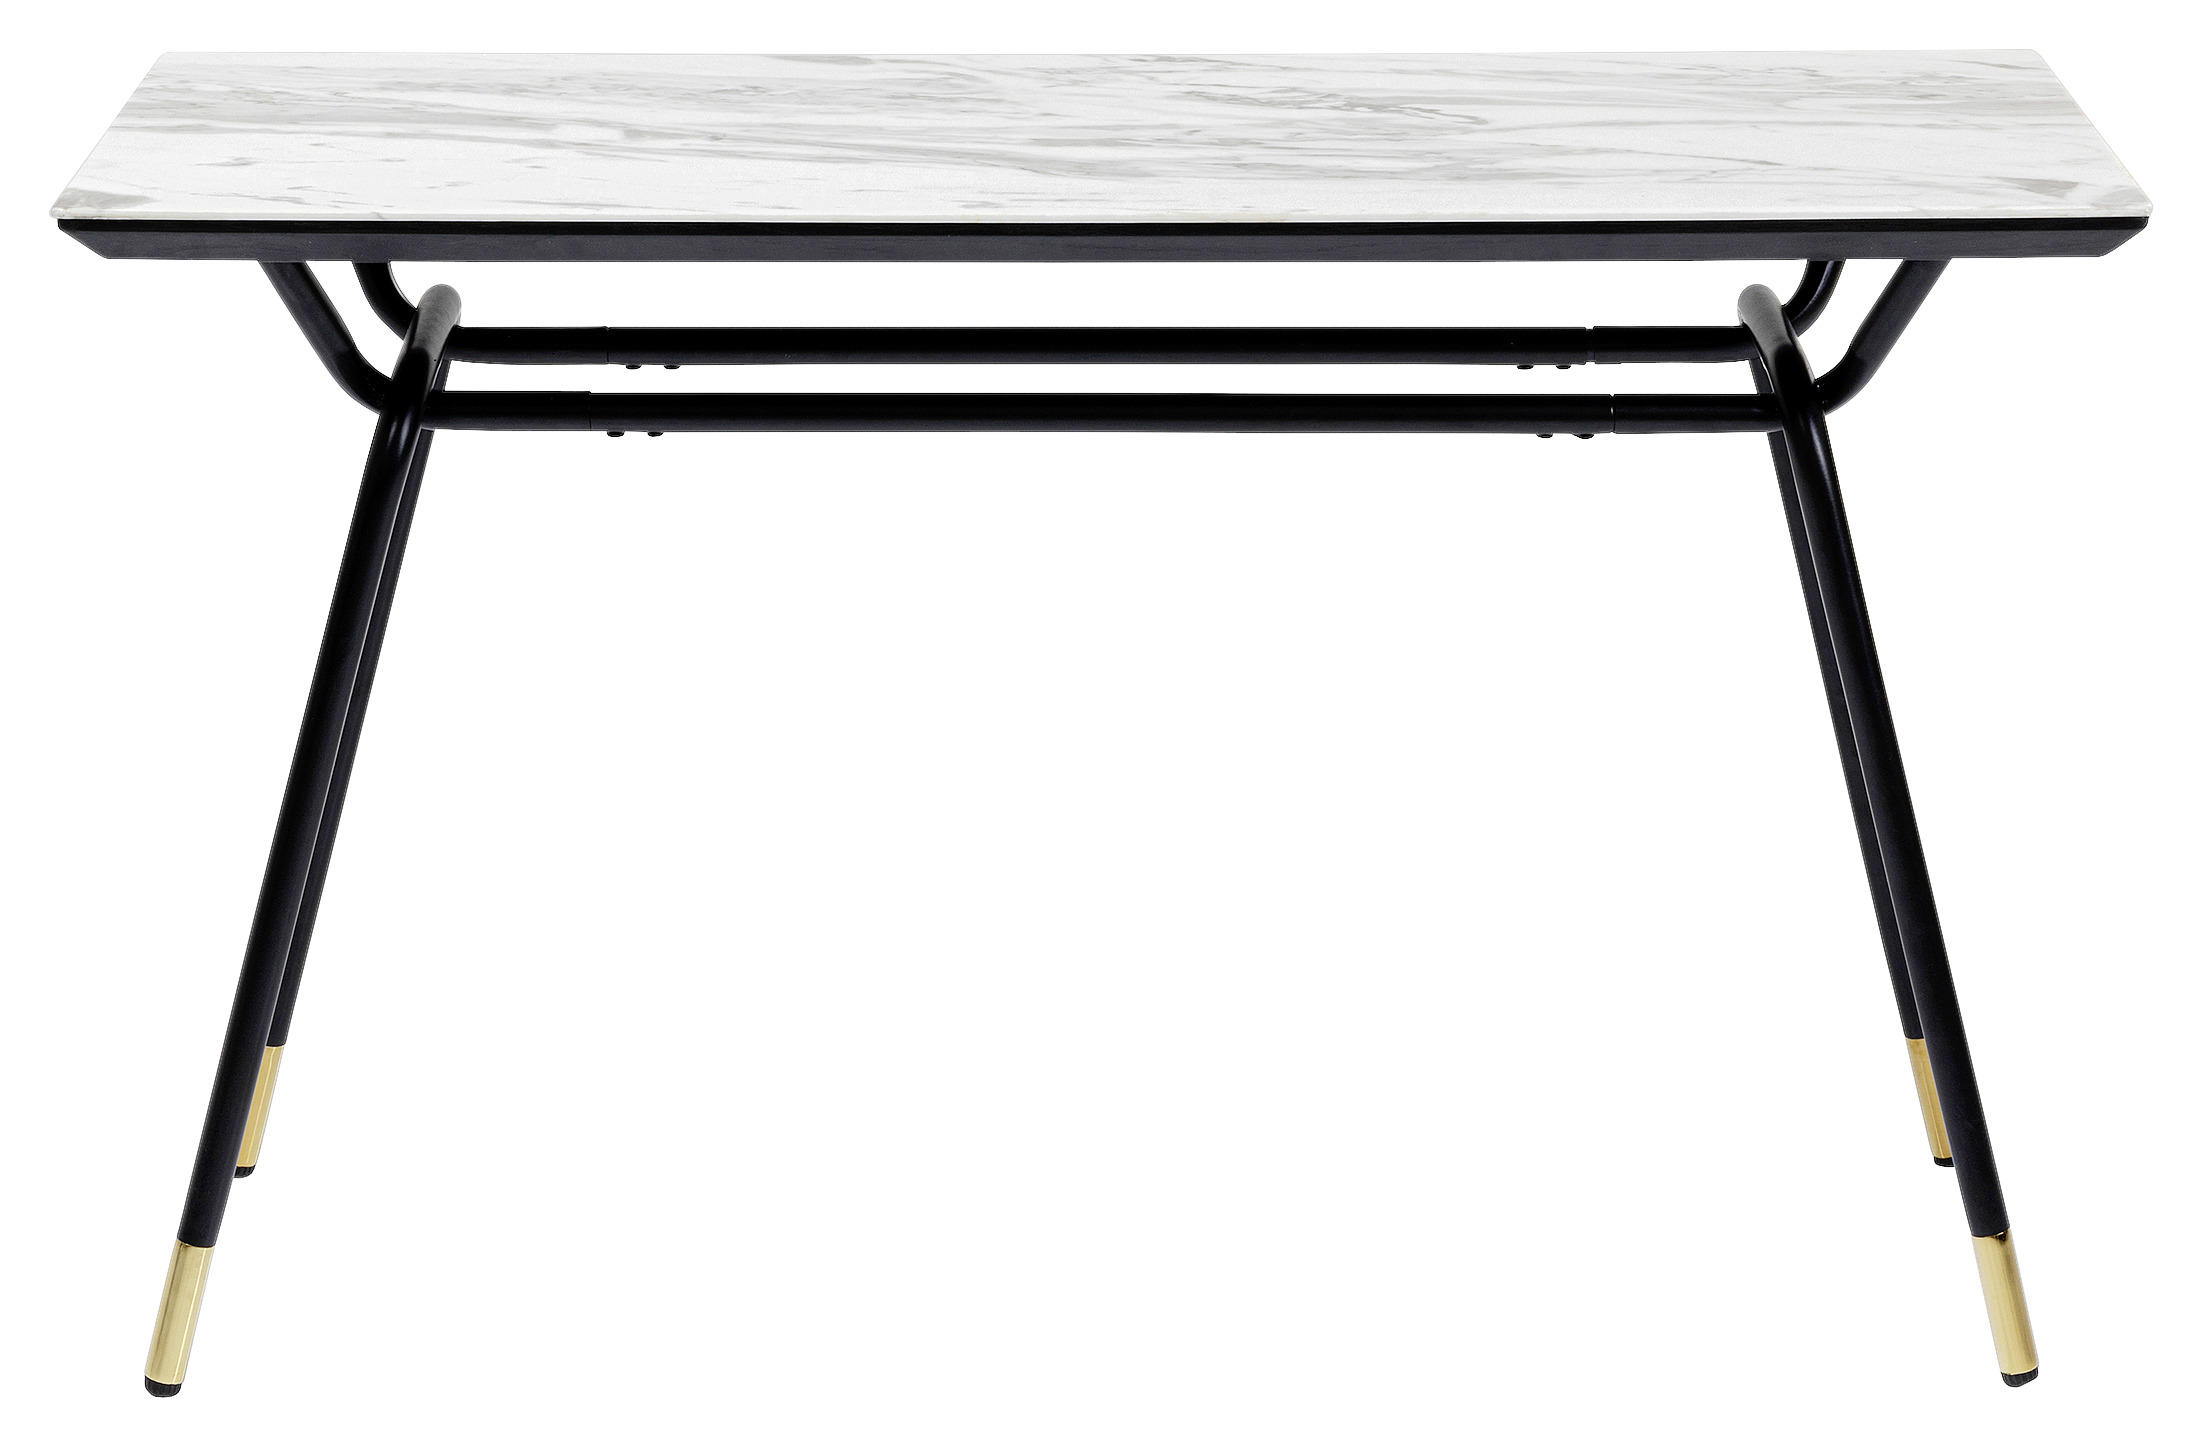 KONSOLE Schwarz, Weiß  - Schwarz/Weiß, Design, Glas/Metall (120/45/75cm) - Kare-Design